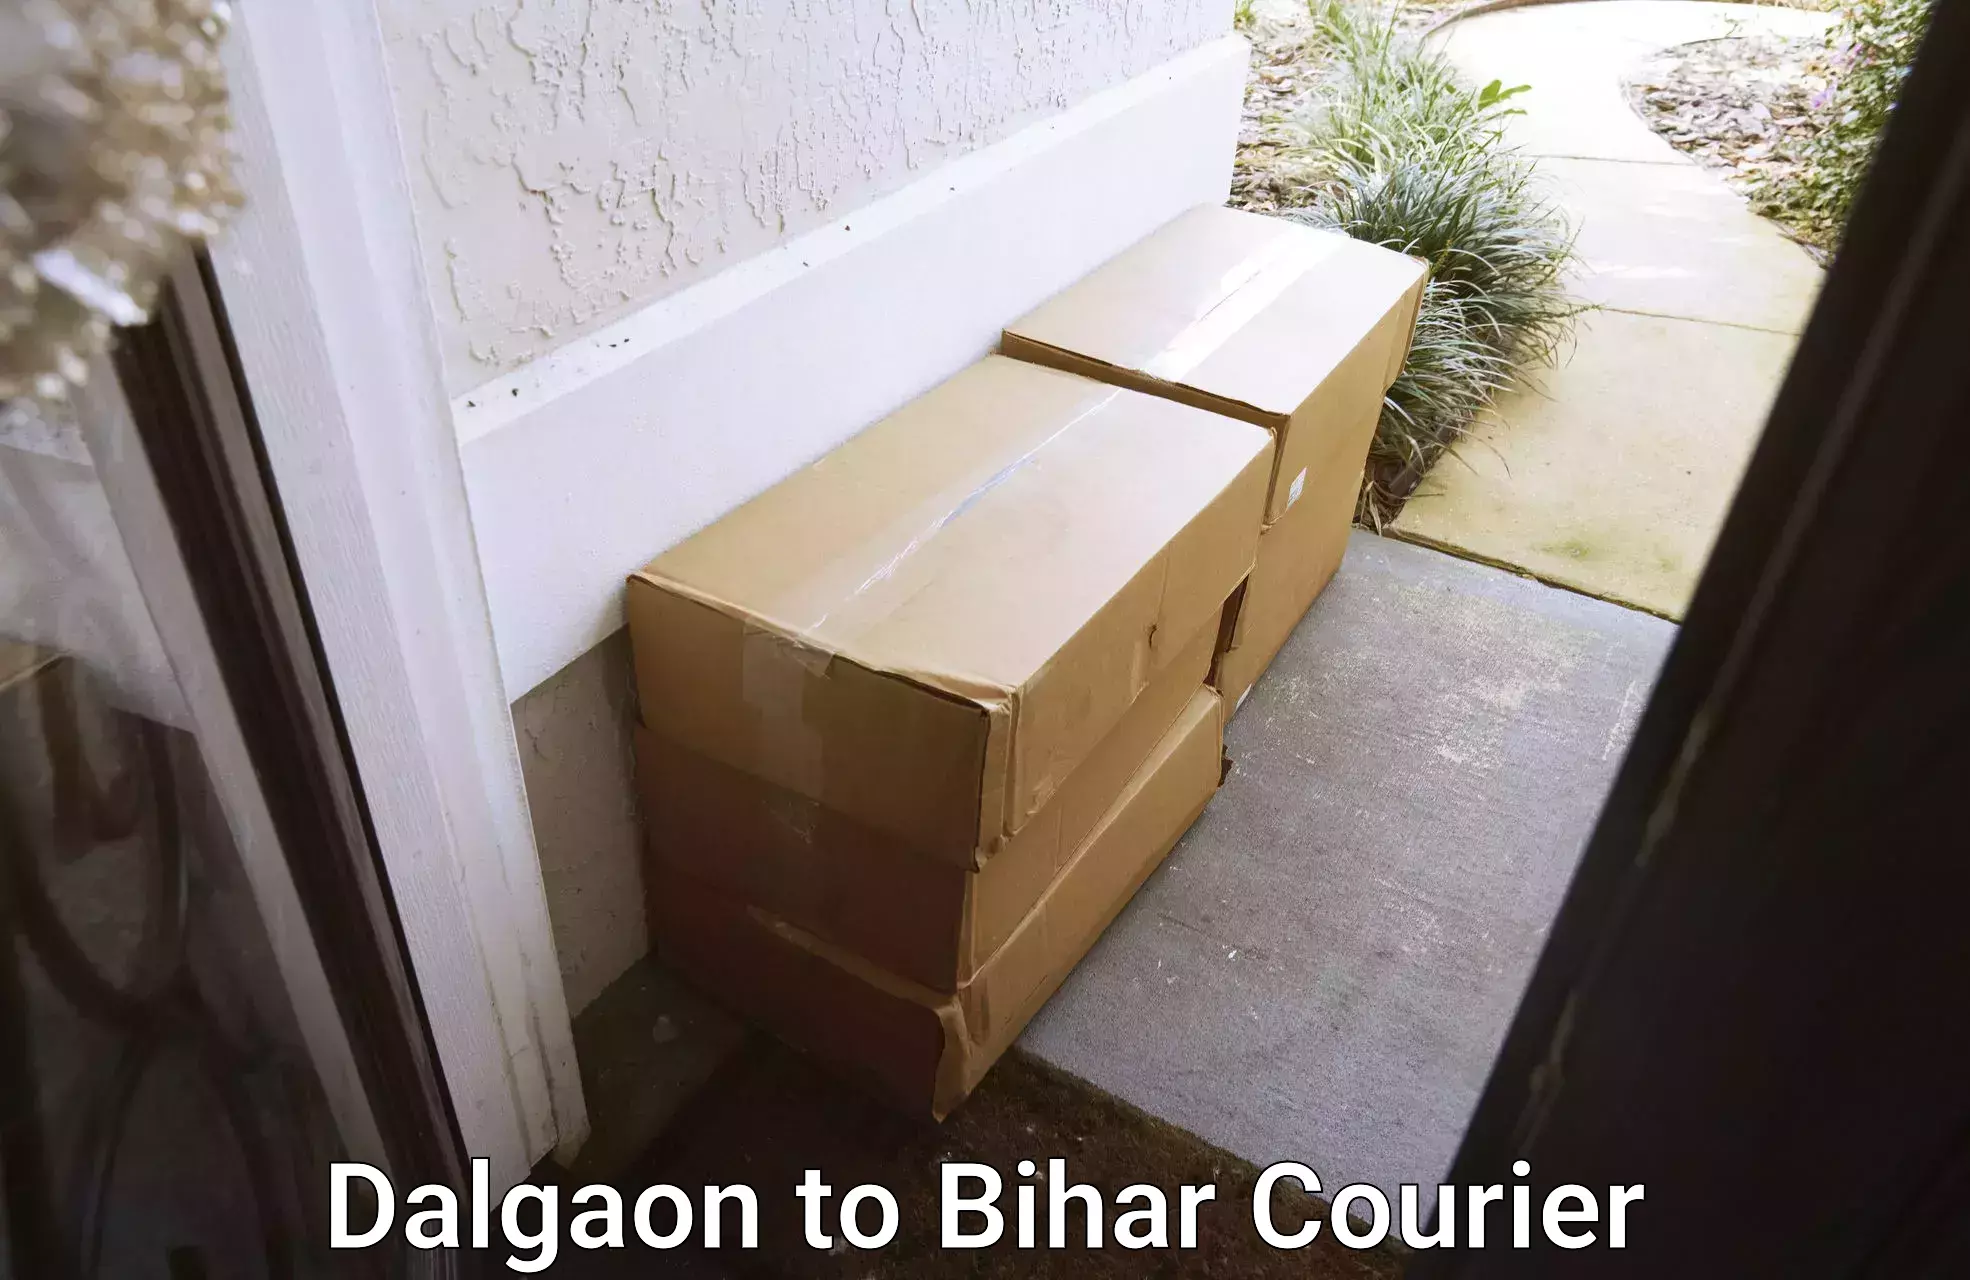 Customer-centric shipping Dalgaon to Kochas